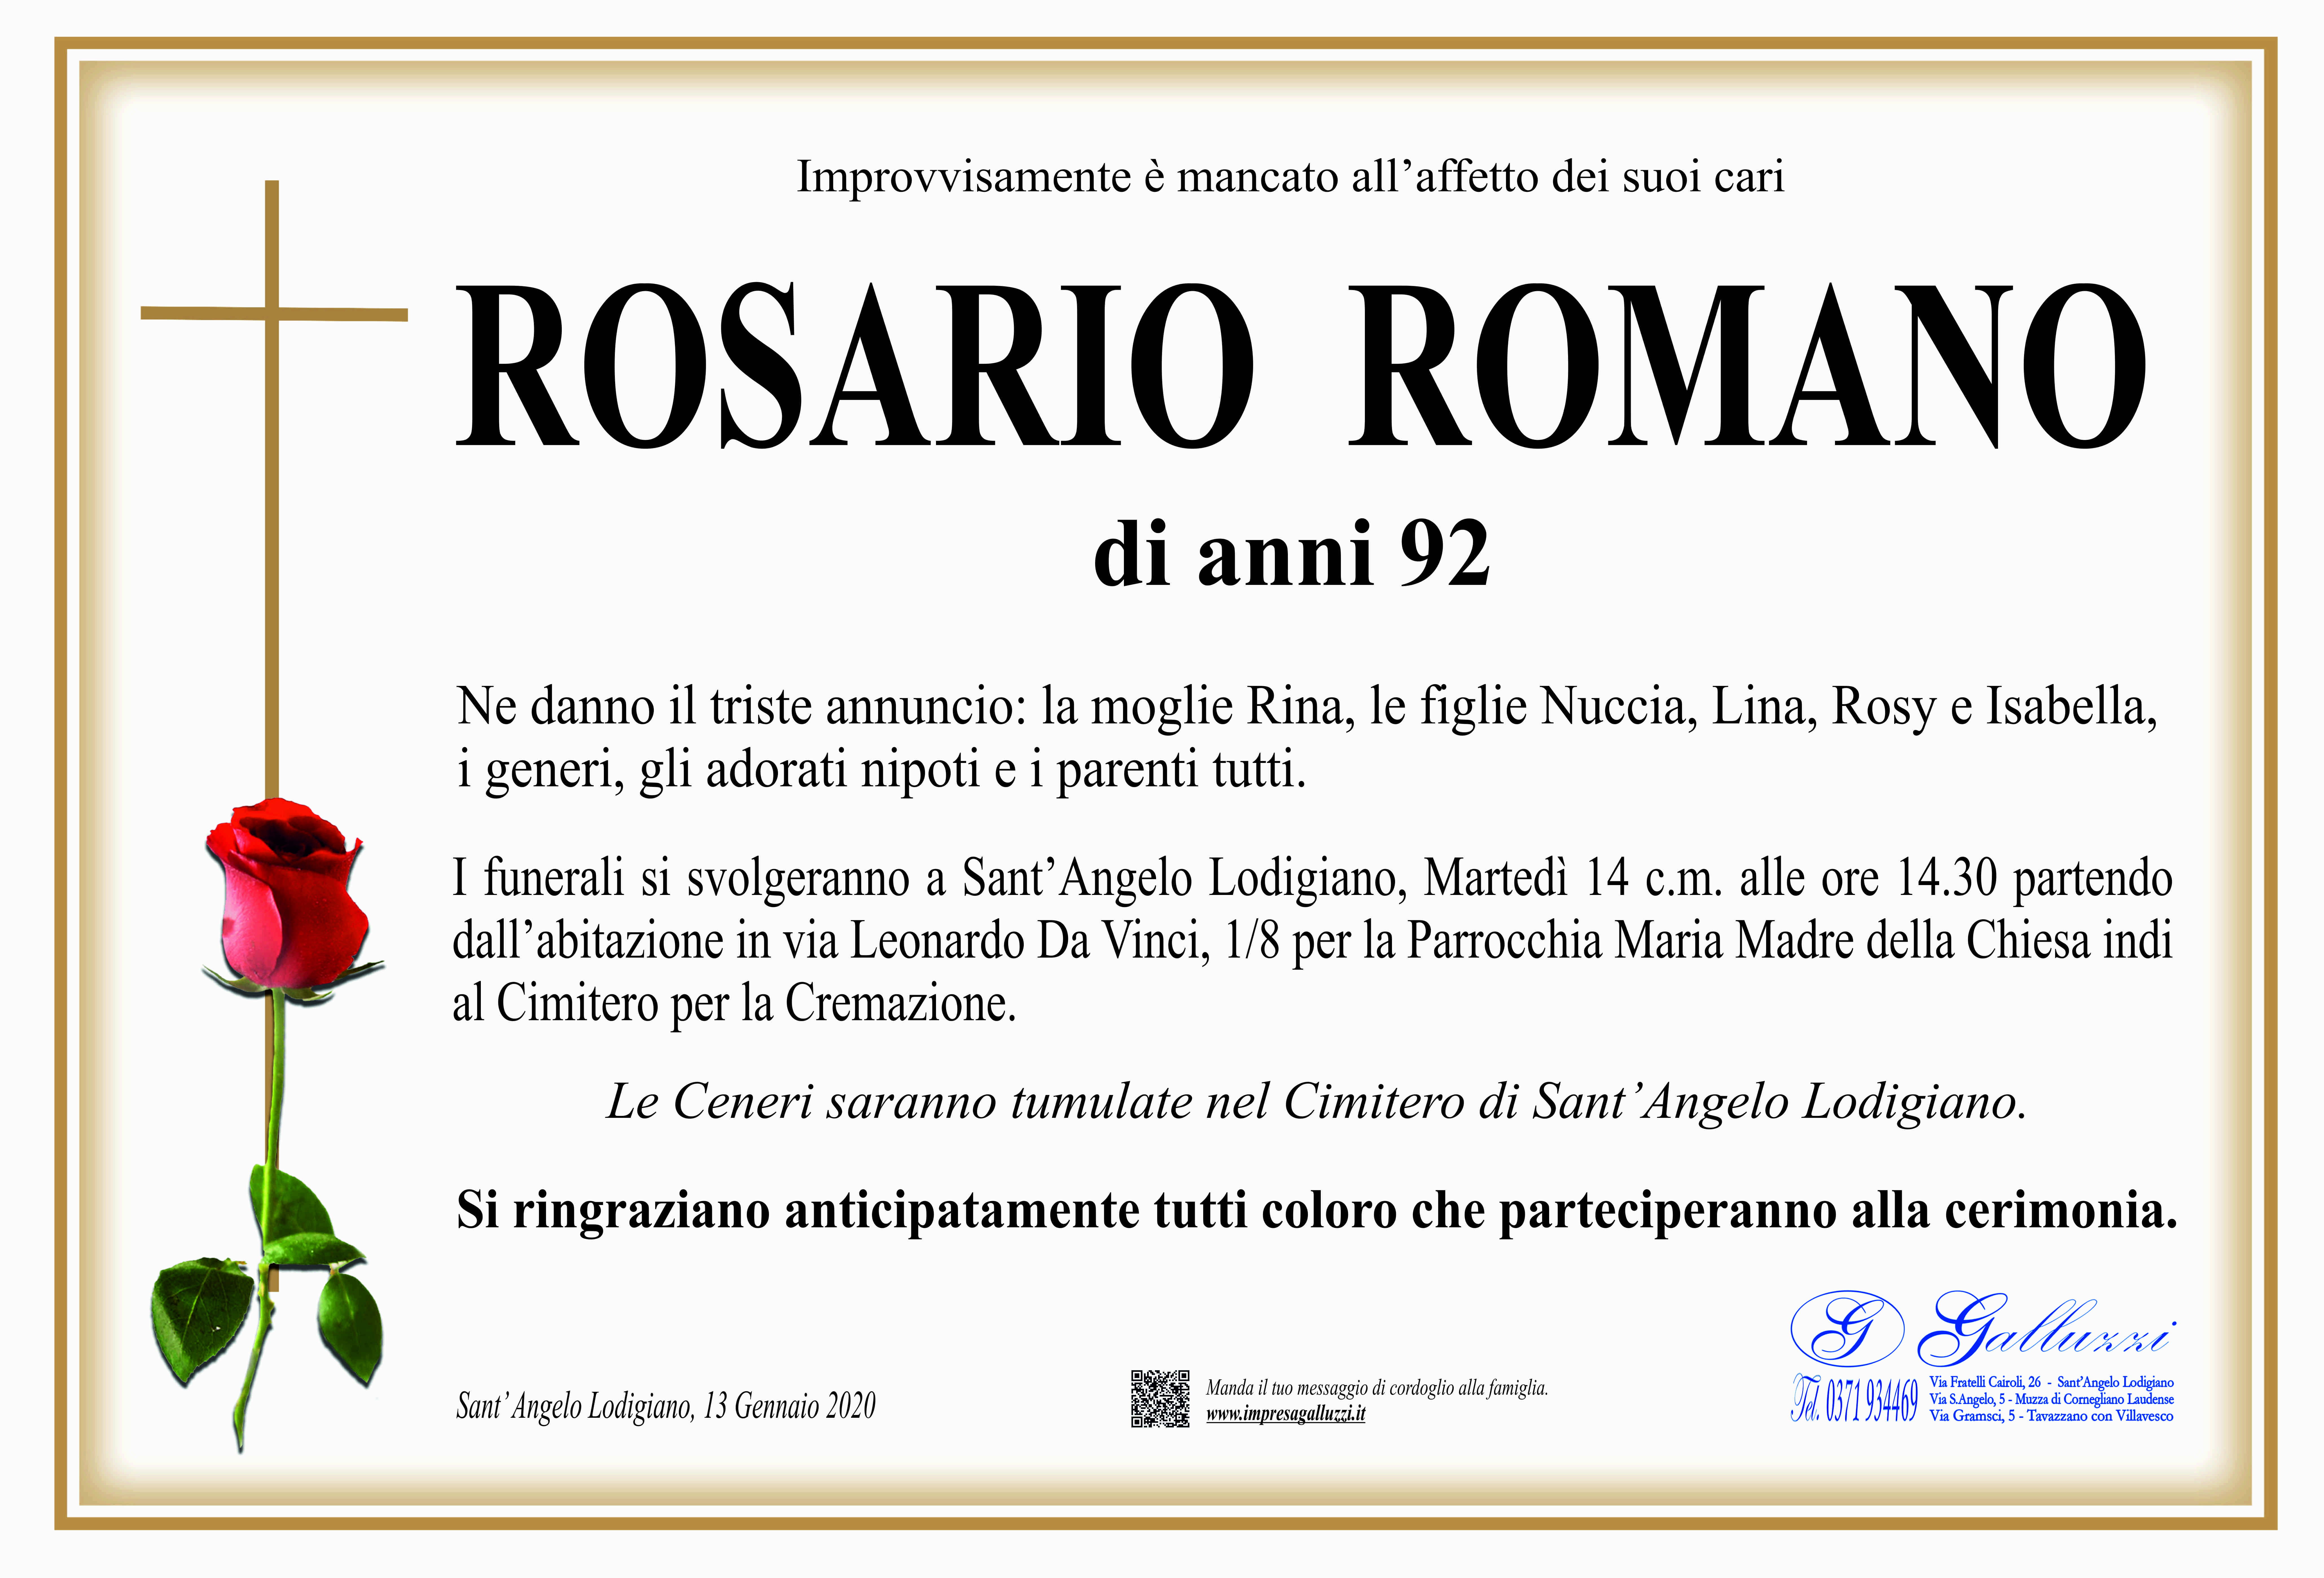 Rosario Romano